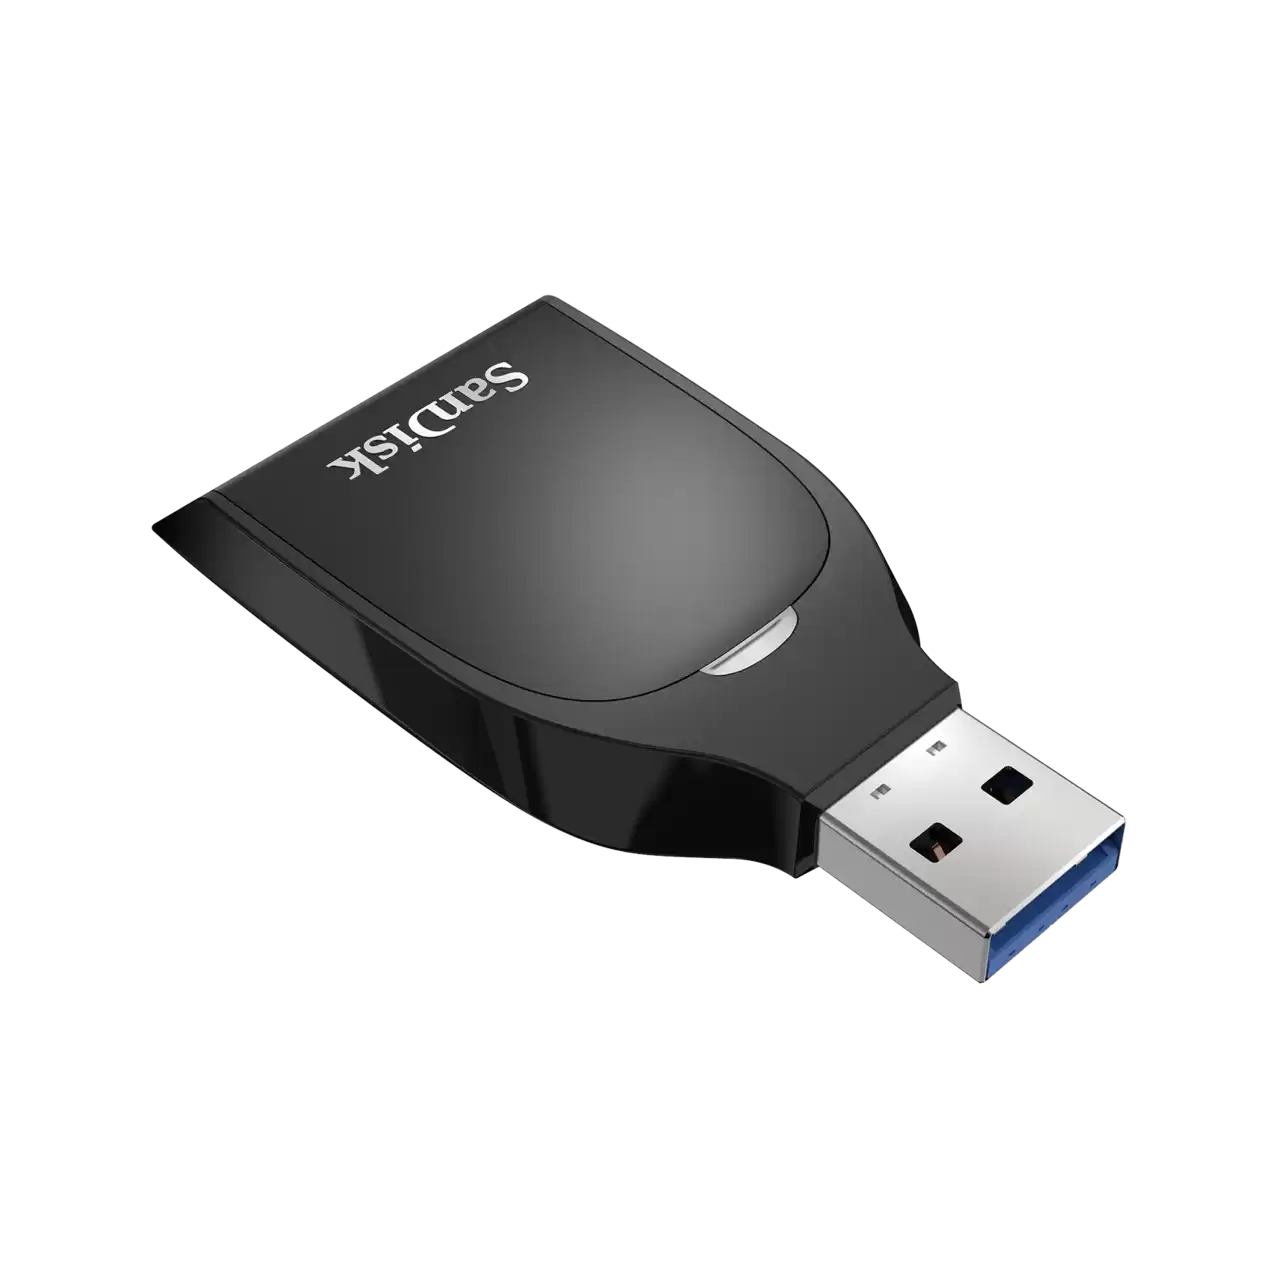   Sandisk SD UHS-I USB 3